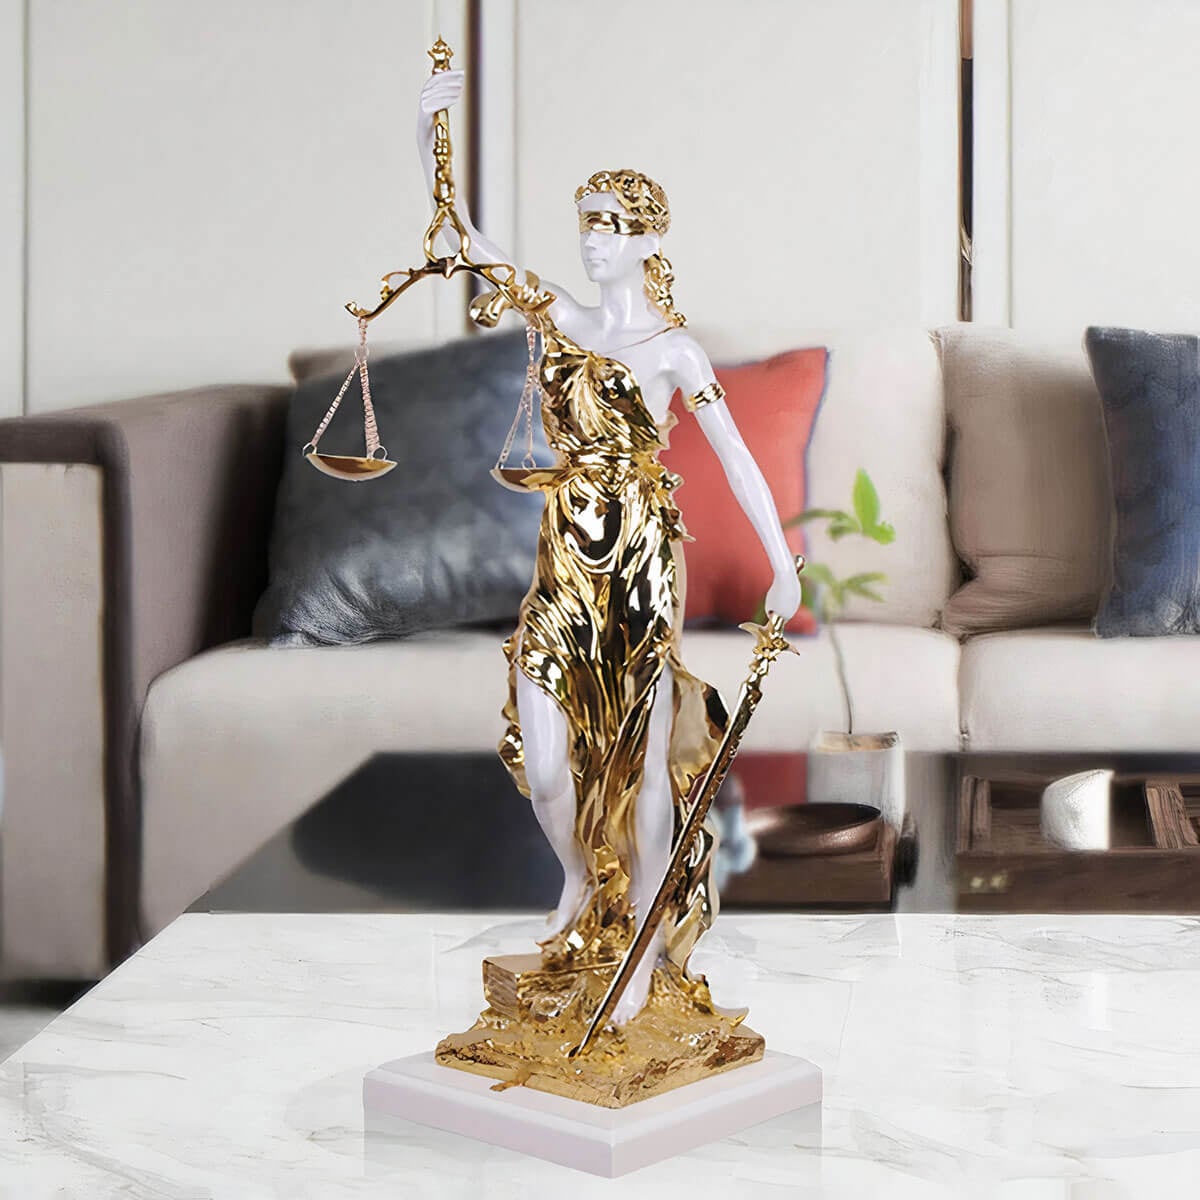 Goddess of Justice Sculpture - Graceful Art for Fairness